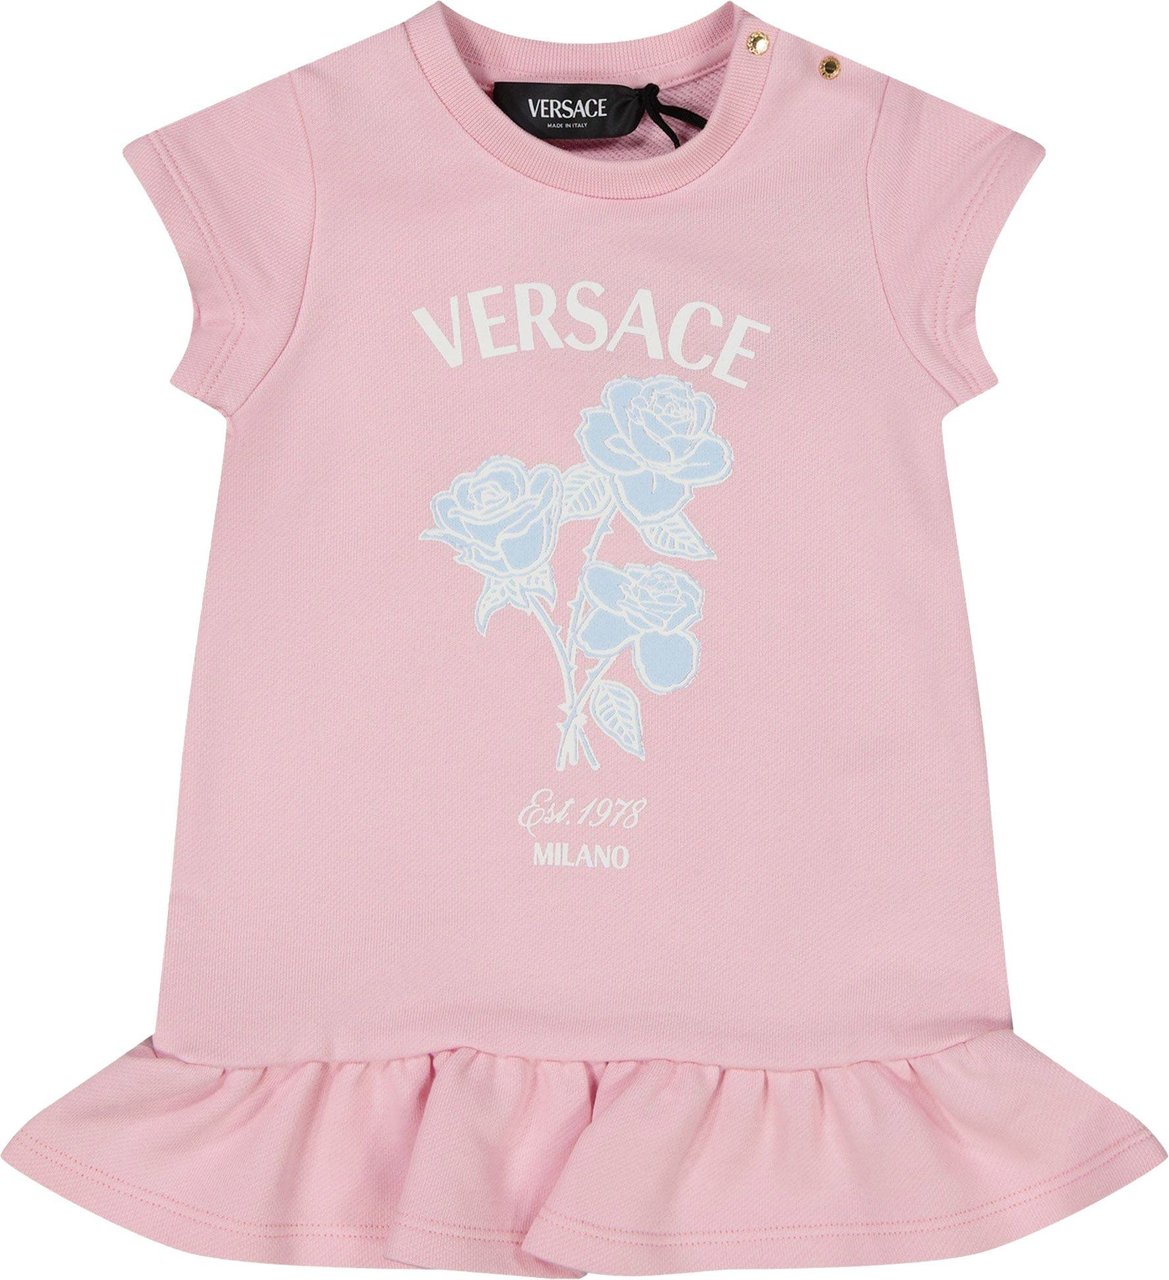 Versace Versace Baby Meisjes Jurk Licht Roze Roze